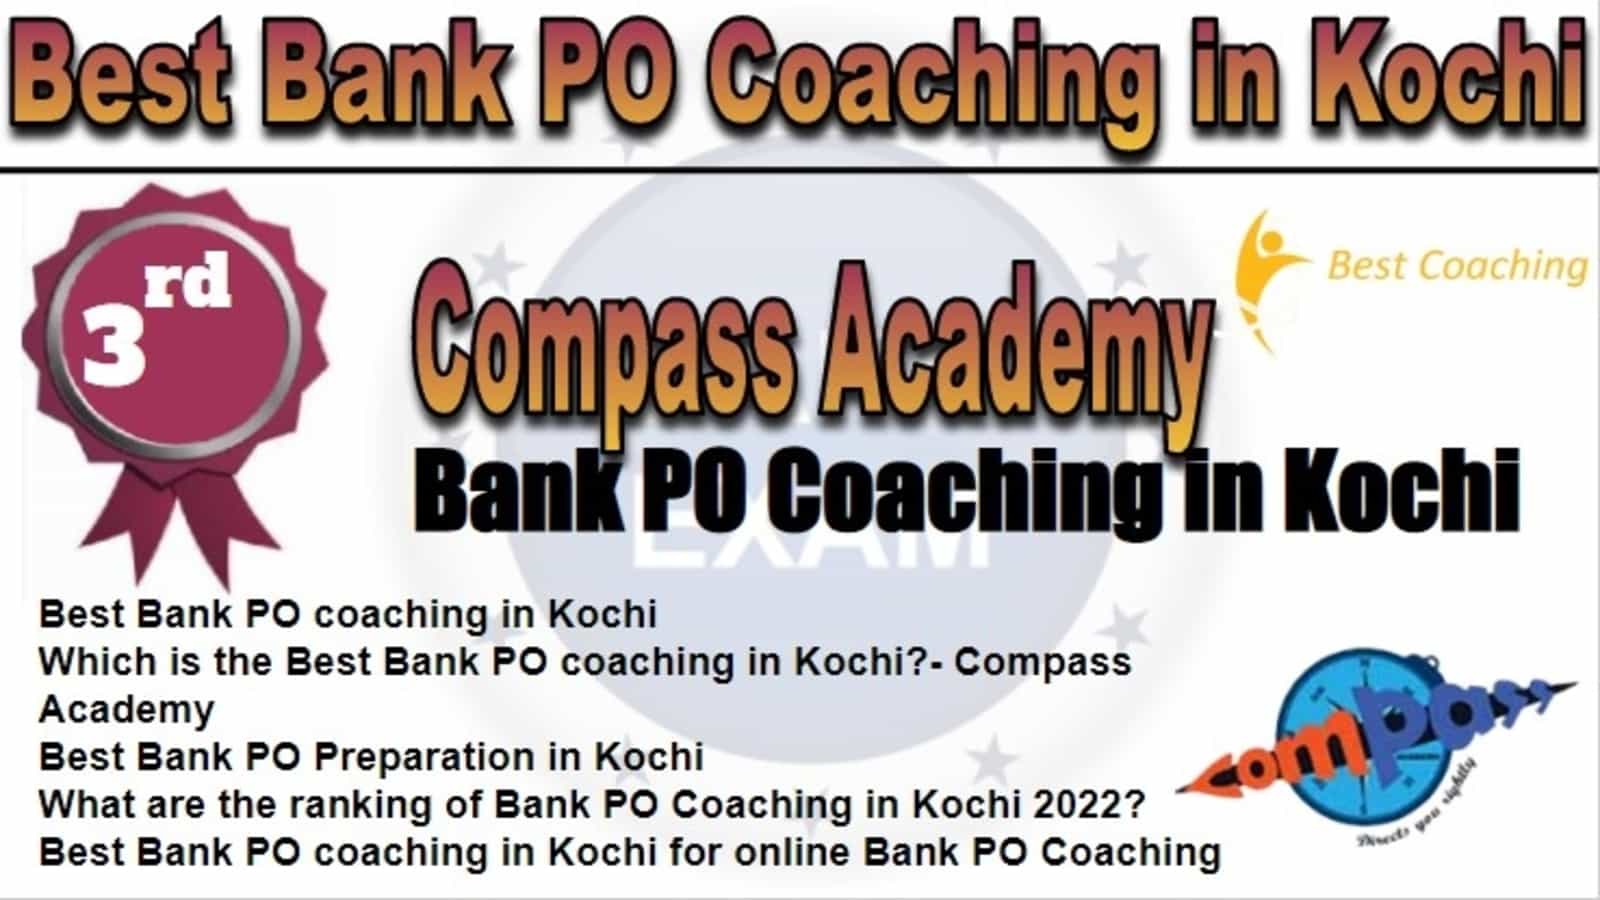 Rank 3 Best Bank PO Coaching in Kochi